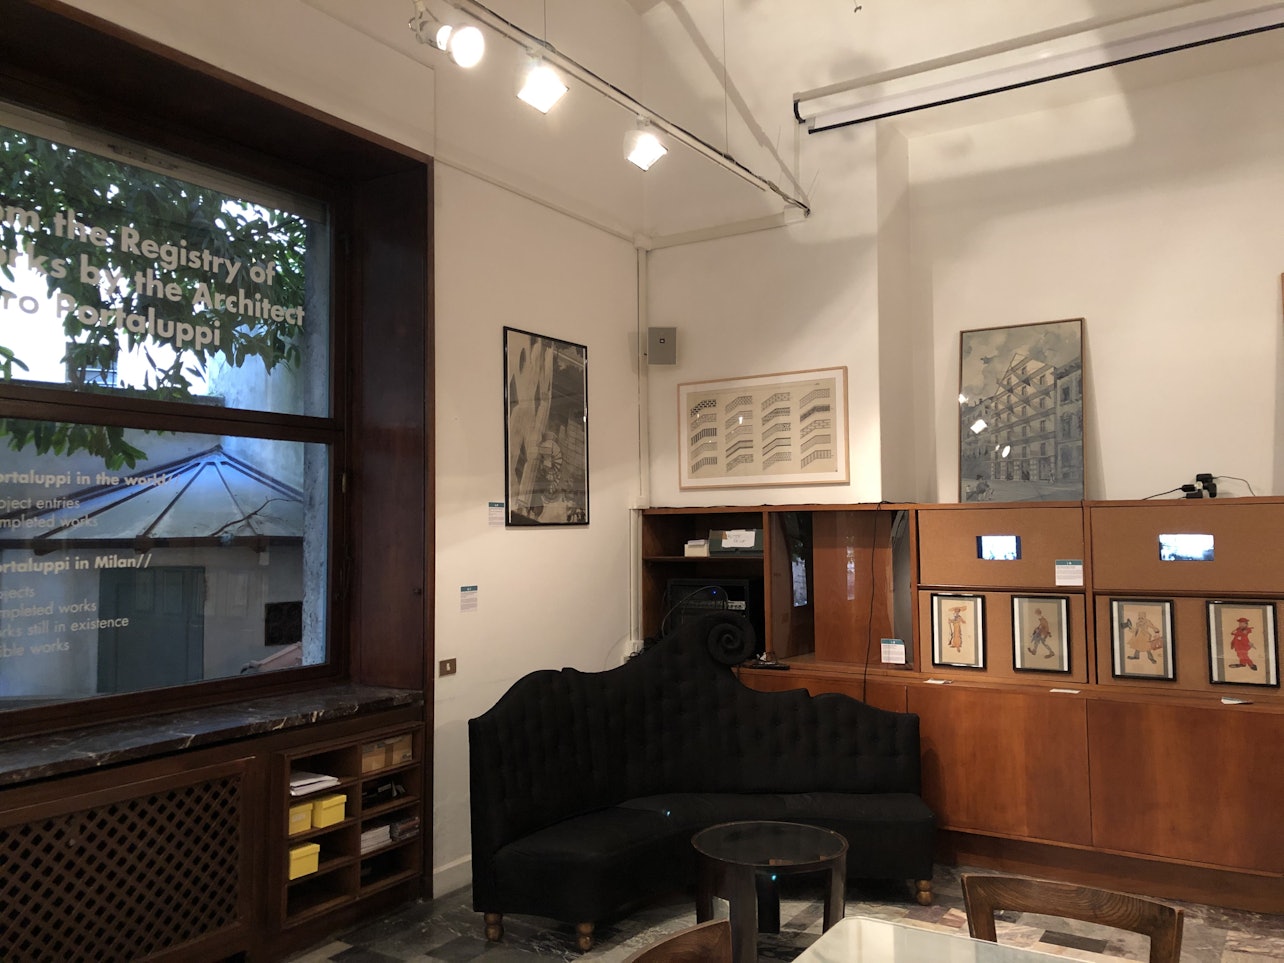 Studio-Museo Portaluppi e visita guidata - Alloggi in Milano